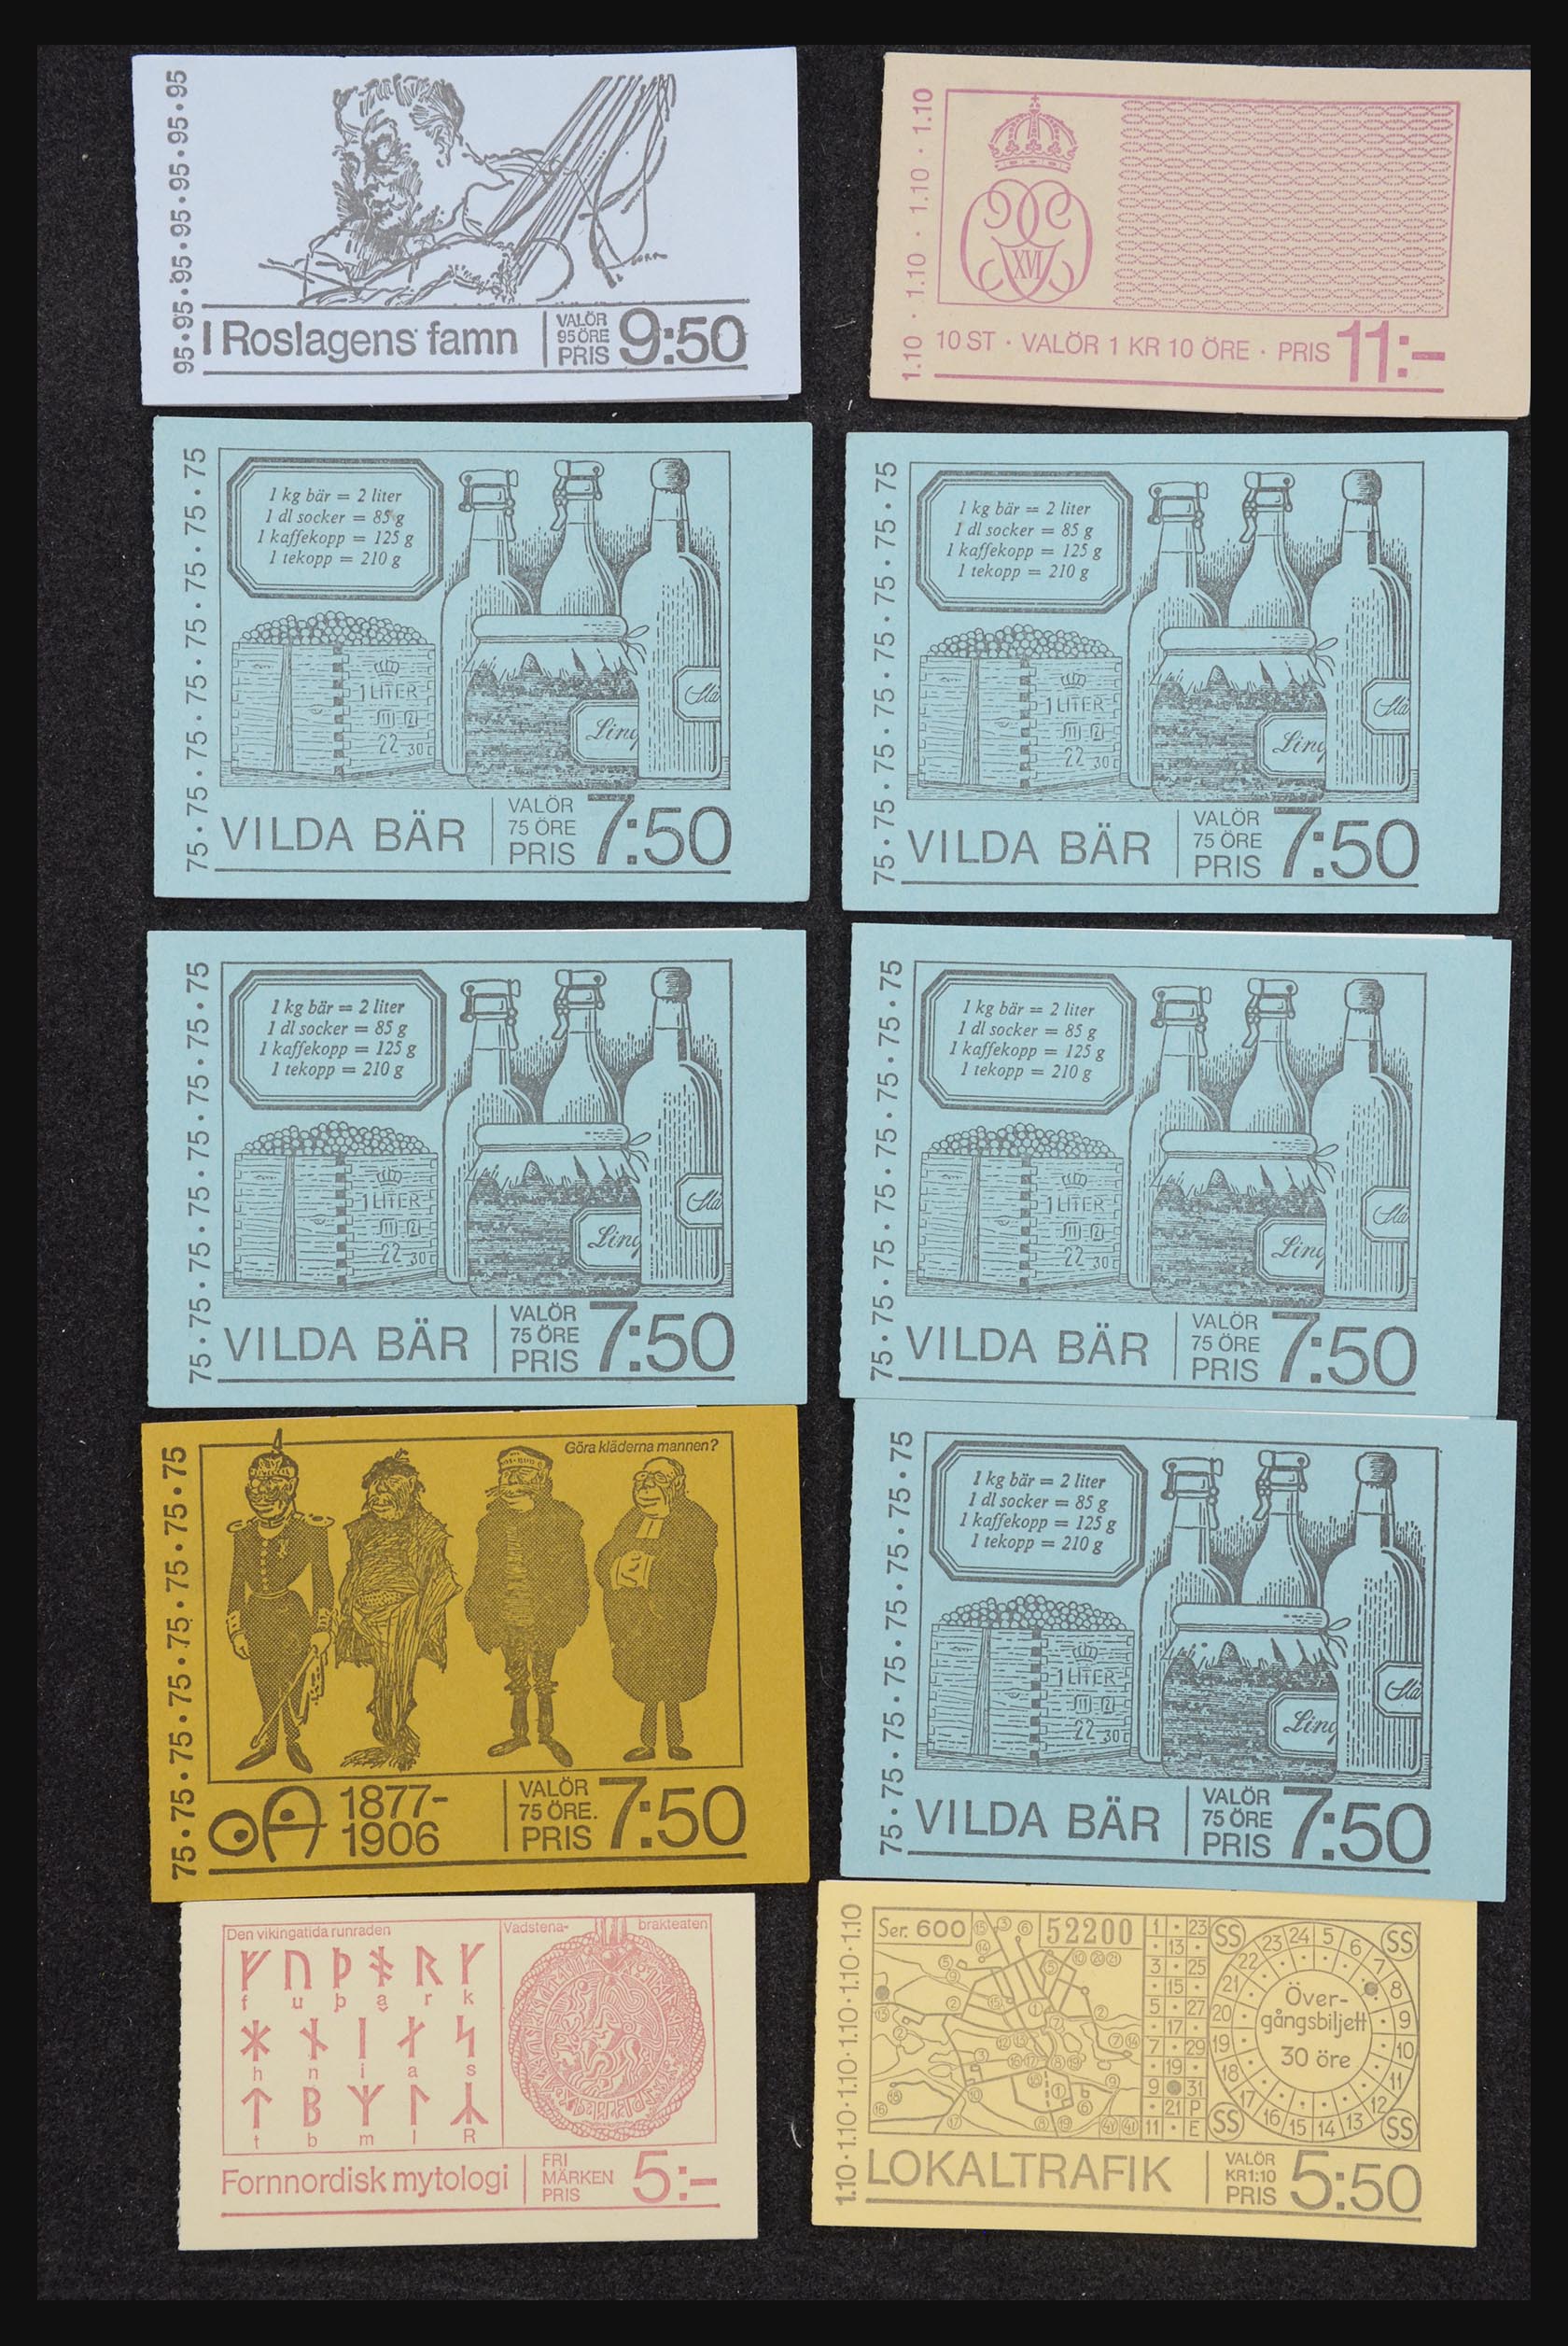 32026 067 - 32026 Sweden stampbooklets 1949-1990.